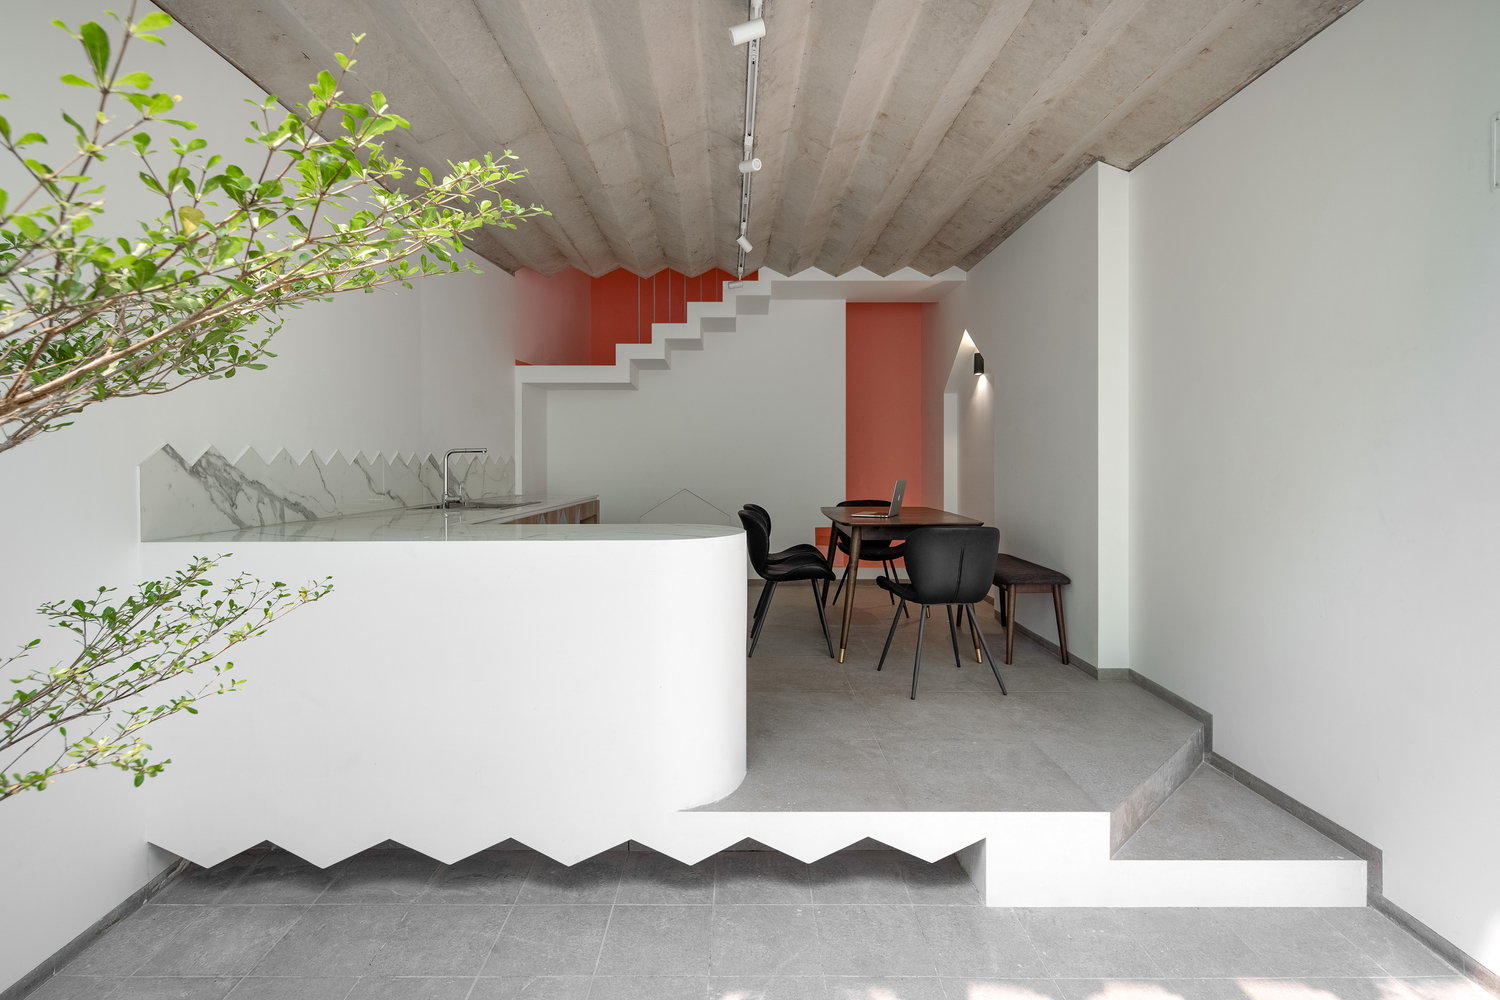 Tầng 1 ngôi nhà dành cho không gian bếp và phòng ăn gọn xinh. Lối thiết kế tối giản, hiện đại giúp tối đa hóa diện tích.